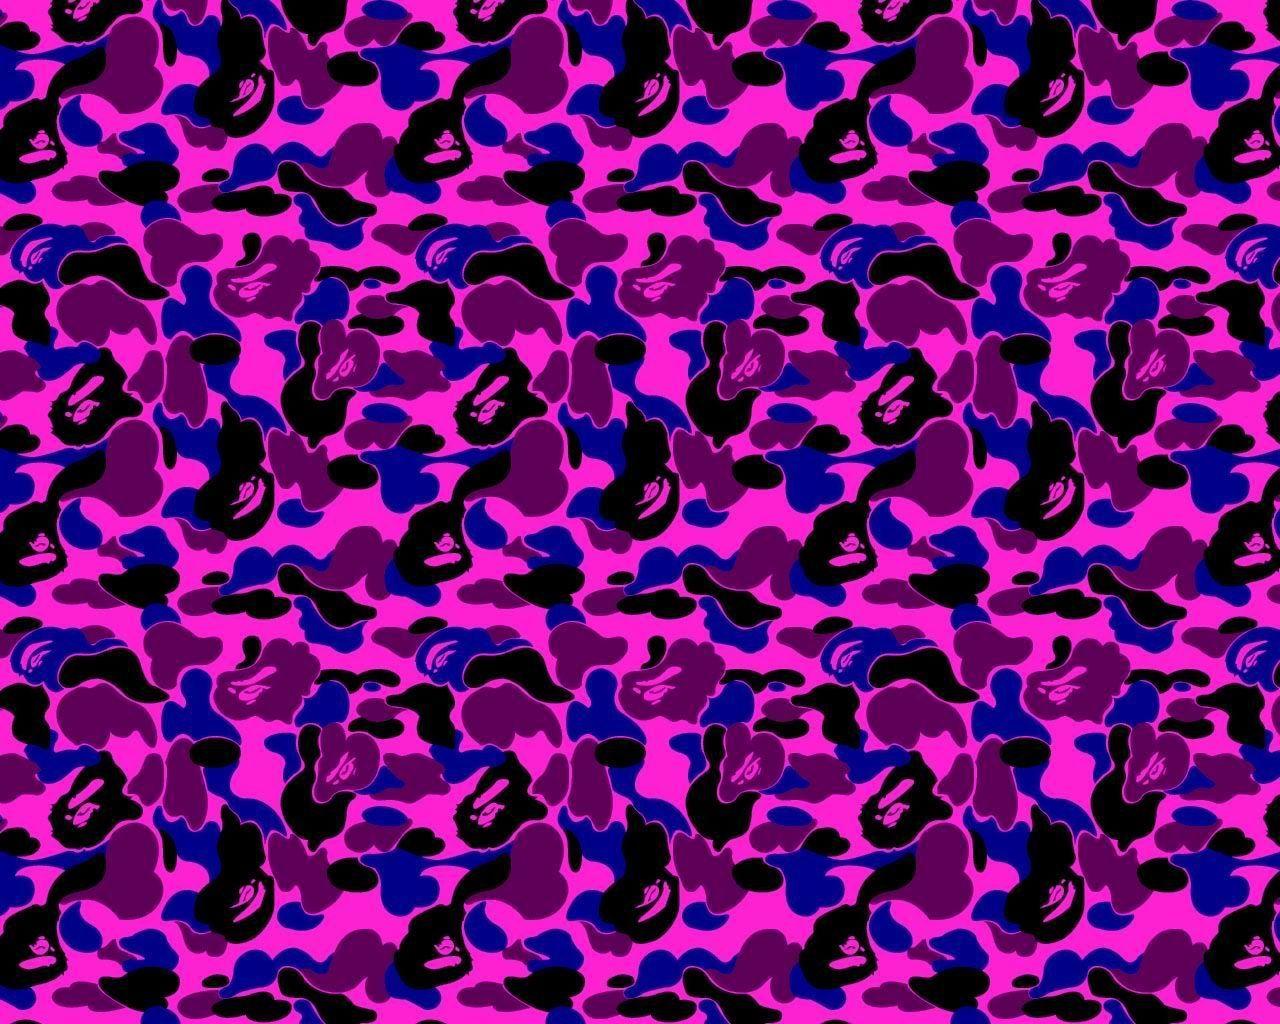 Purple BAPE Shark Logo - Streetwear Wallpapers Group 1280×1024 BAPE Wallpapers (36 Wallpapers ...